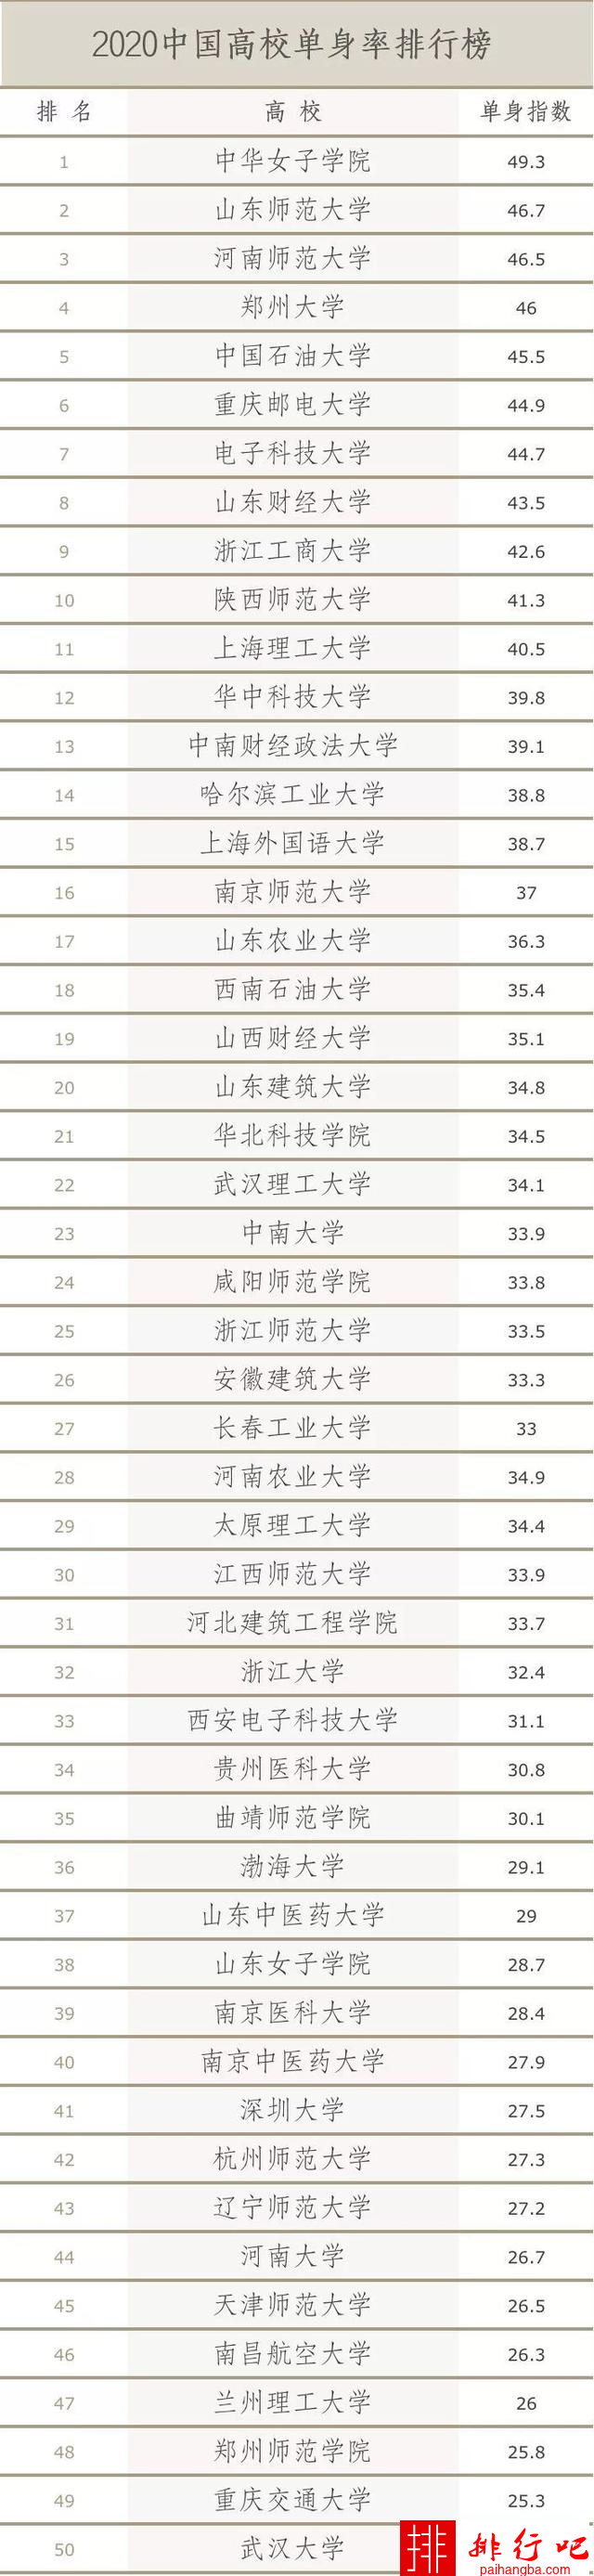 2020年中国高校单身率排行榜-国内高校单身率排行前十